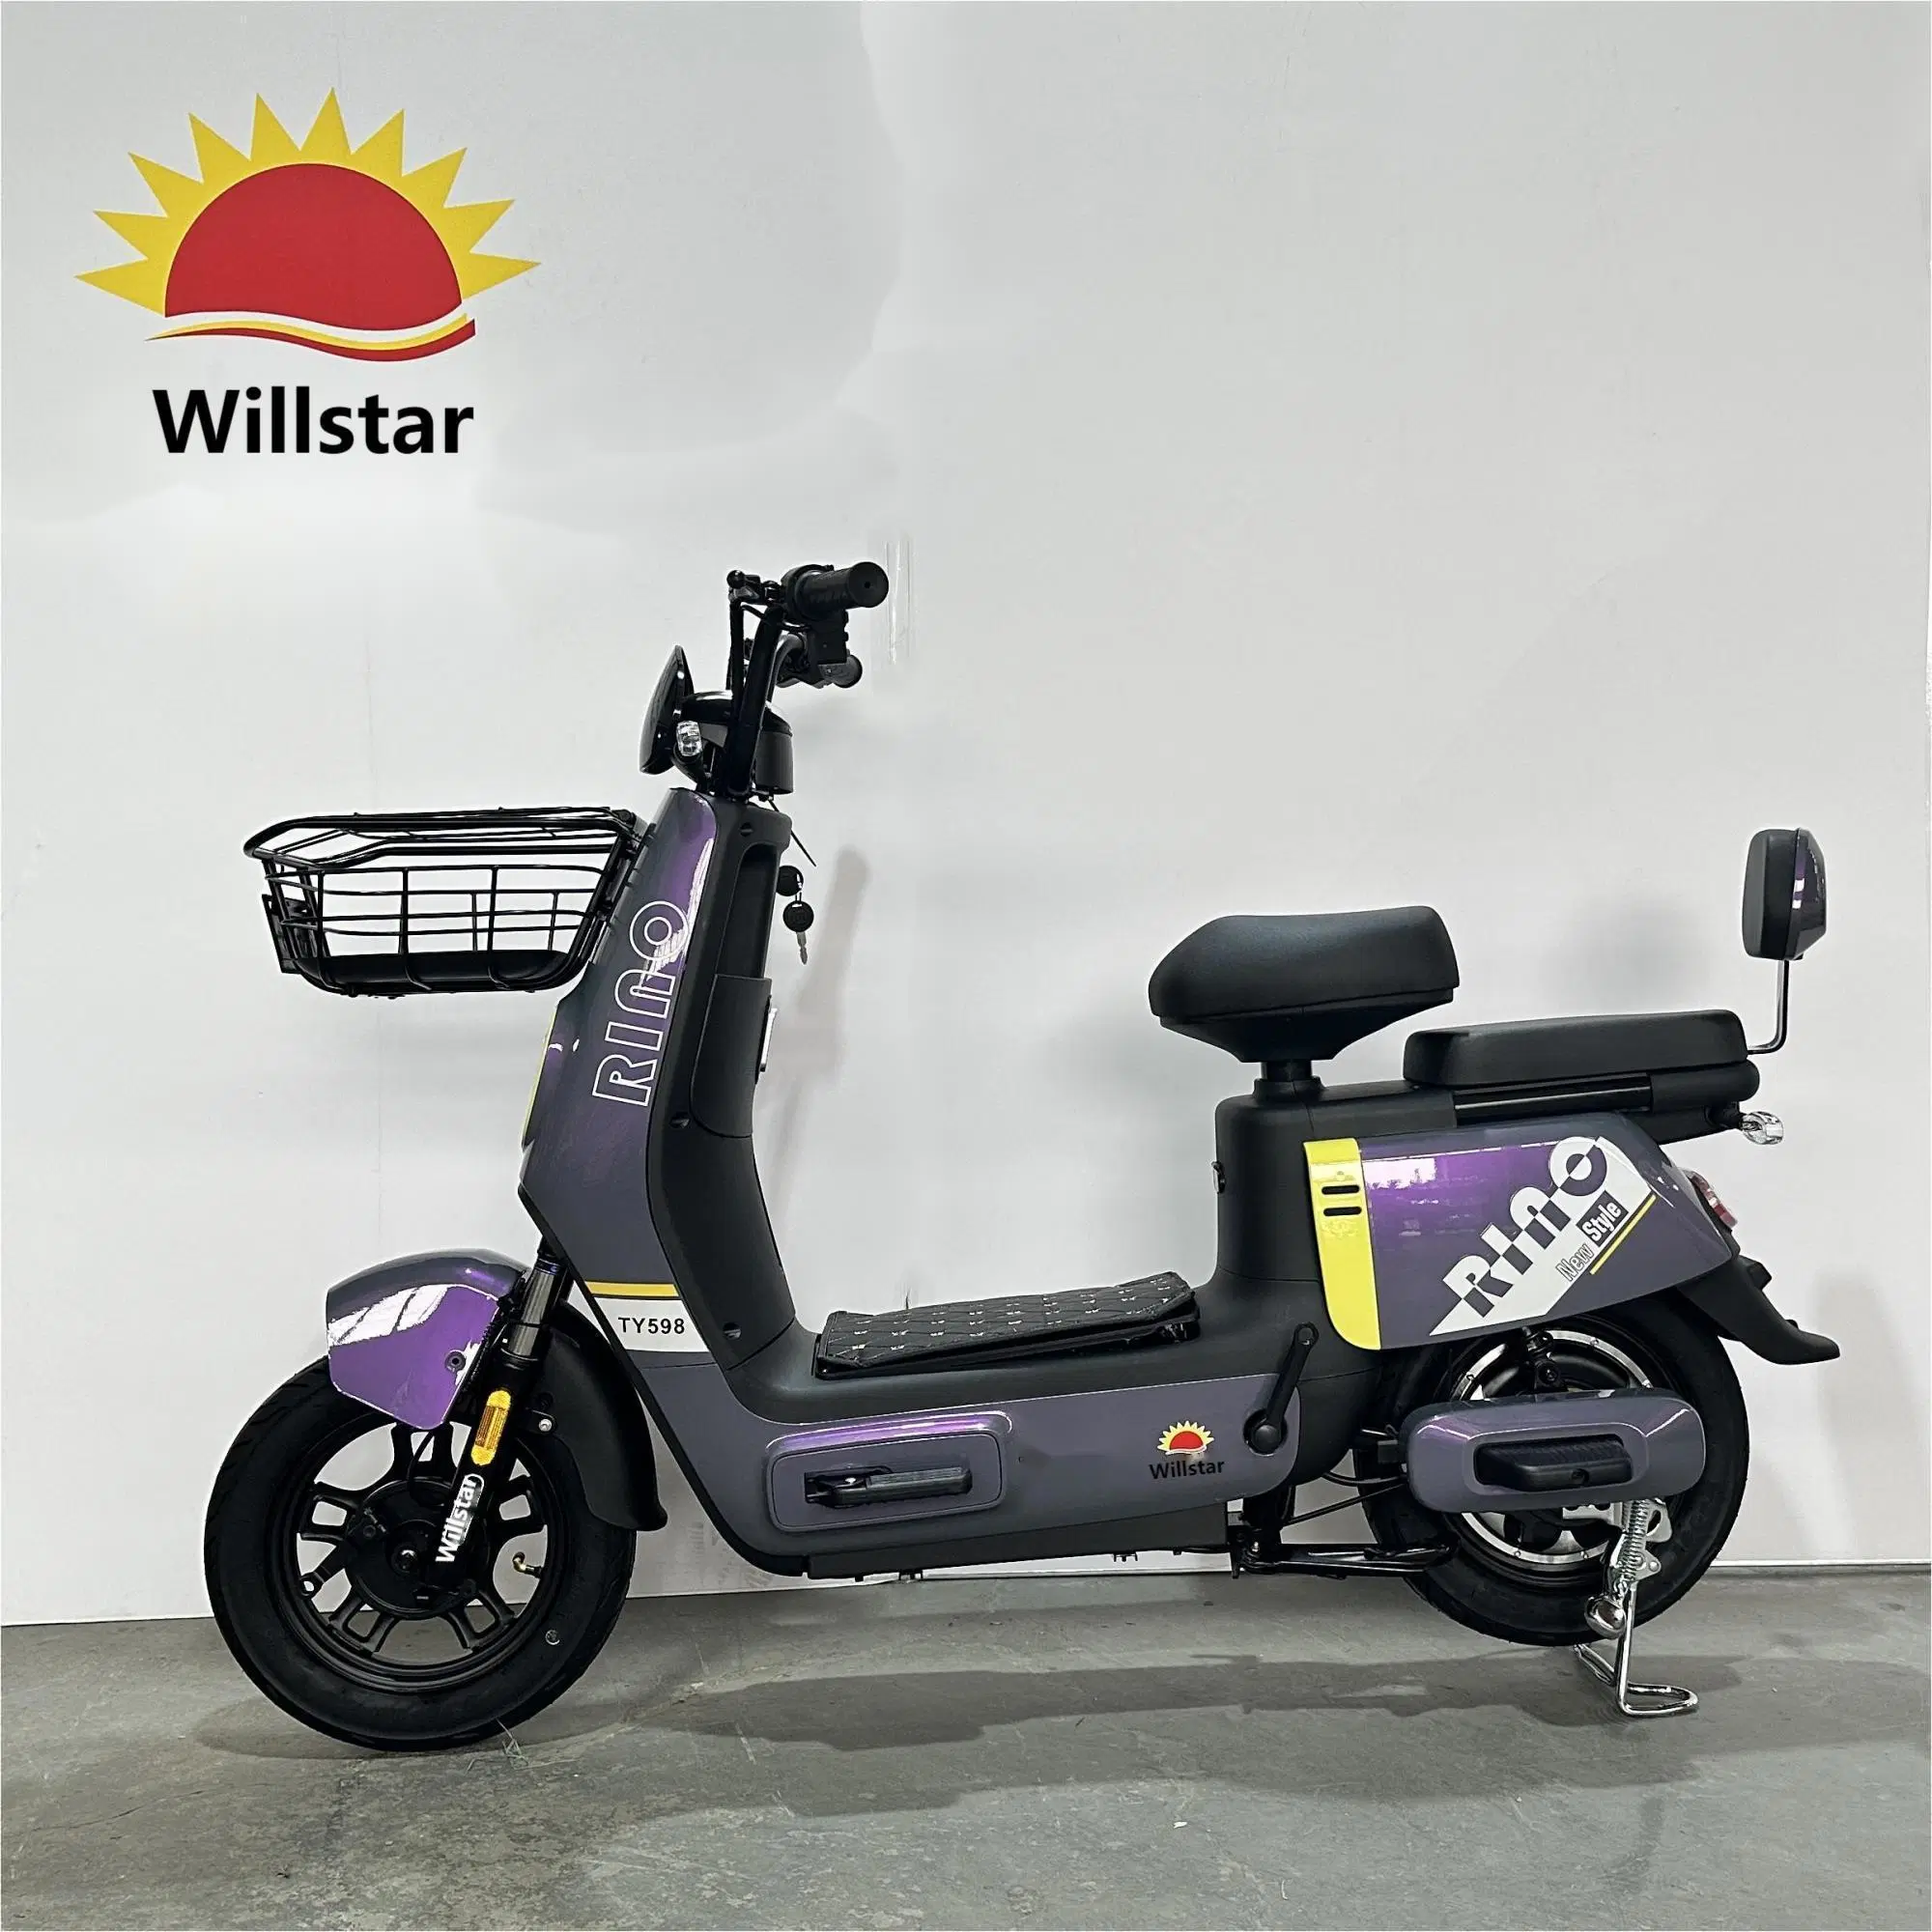 Vélo électrique Willstar Ty598 avec batterie au plomb Chilwee ou Tianneng 48V12ah Dernier modèle.